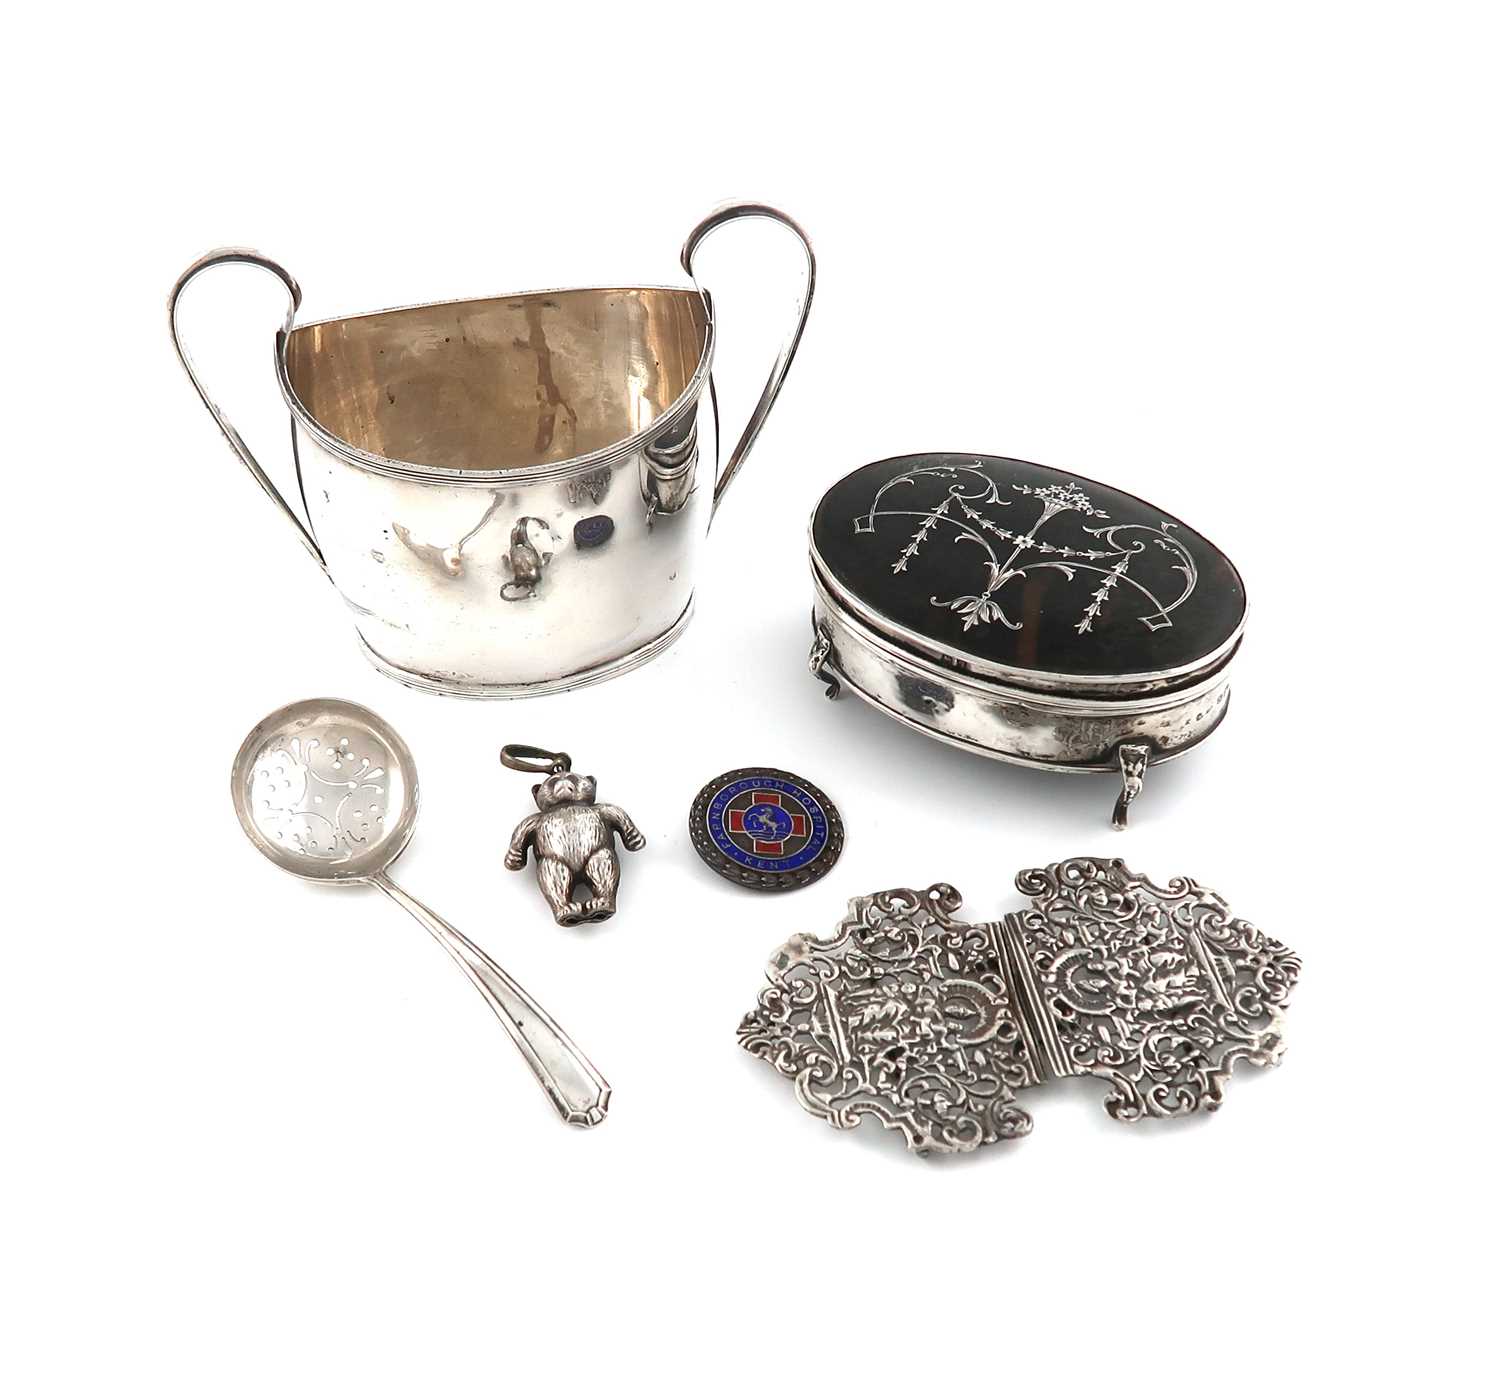 λA mixed lot of silver items,various dates and makers,comprising: a silver and tortoiseshell